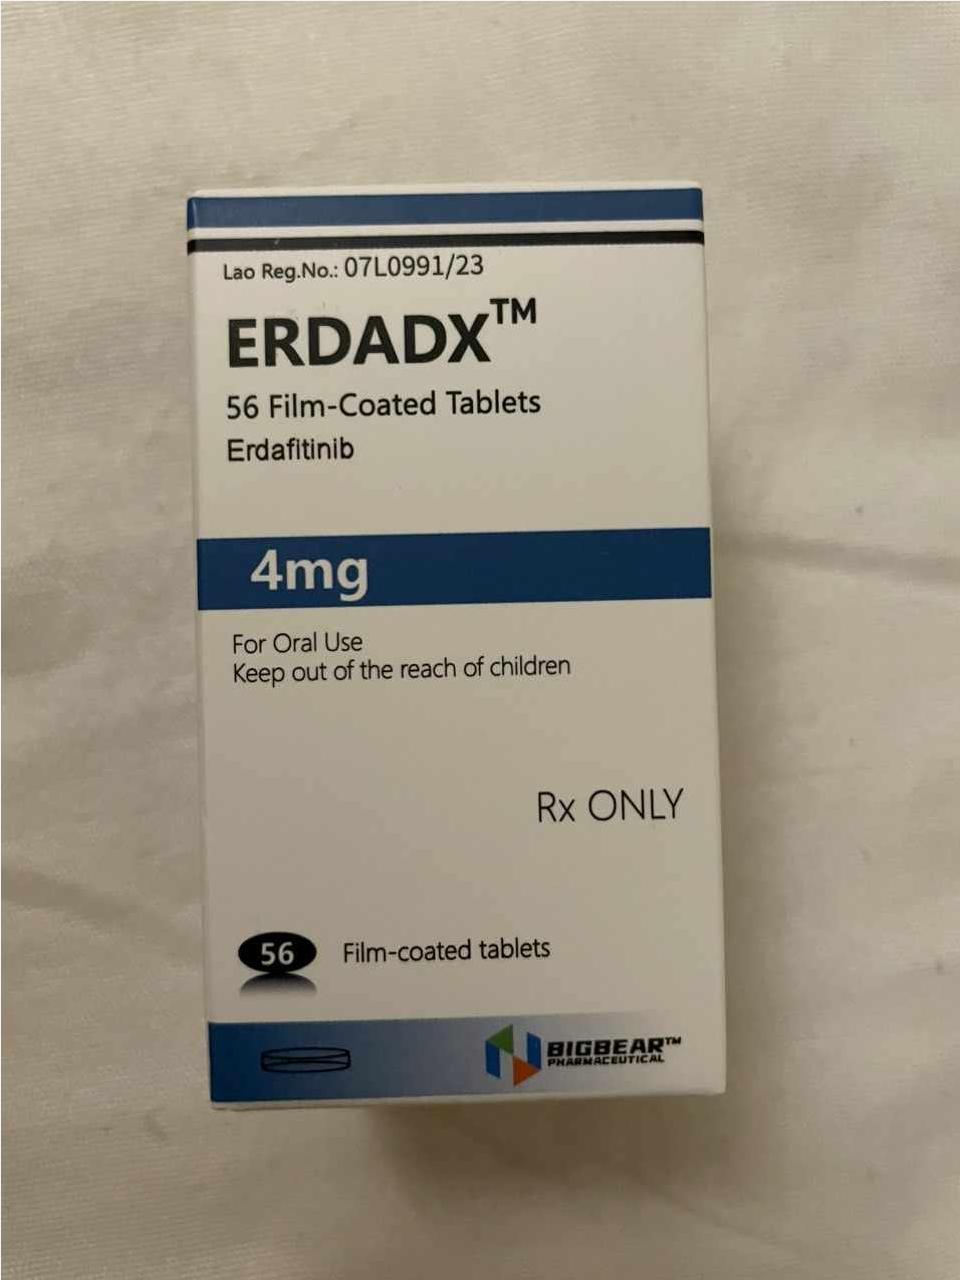 Thuốc ERDADX Erdafitinib 4mg giá bao nhiêu mua ở đâu